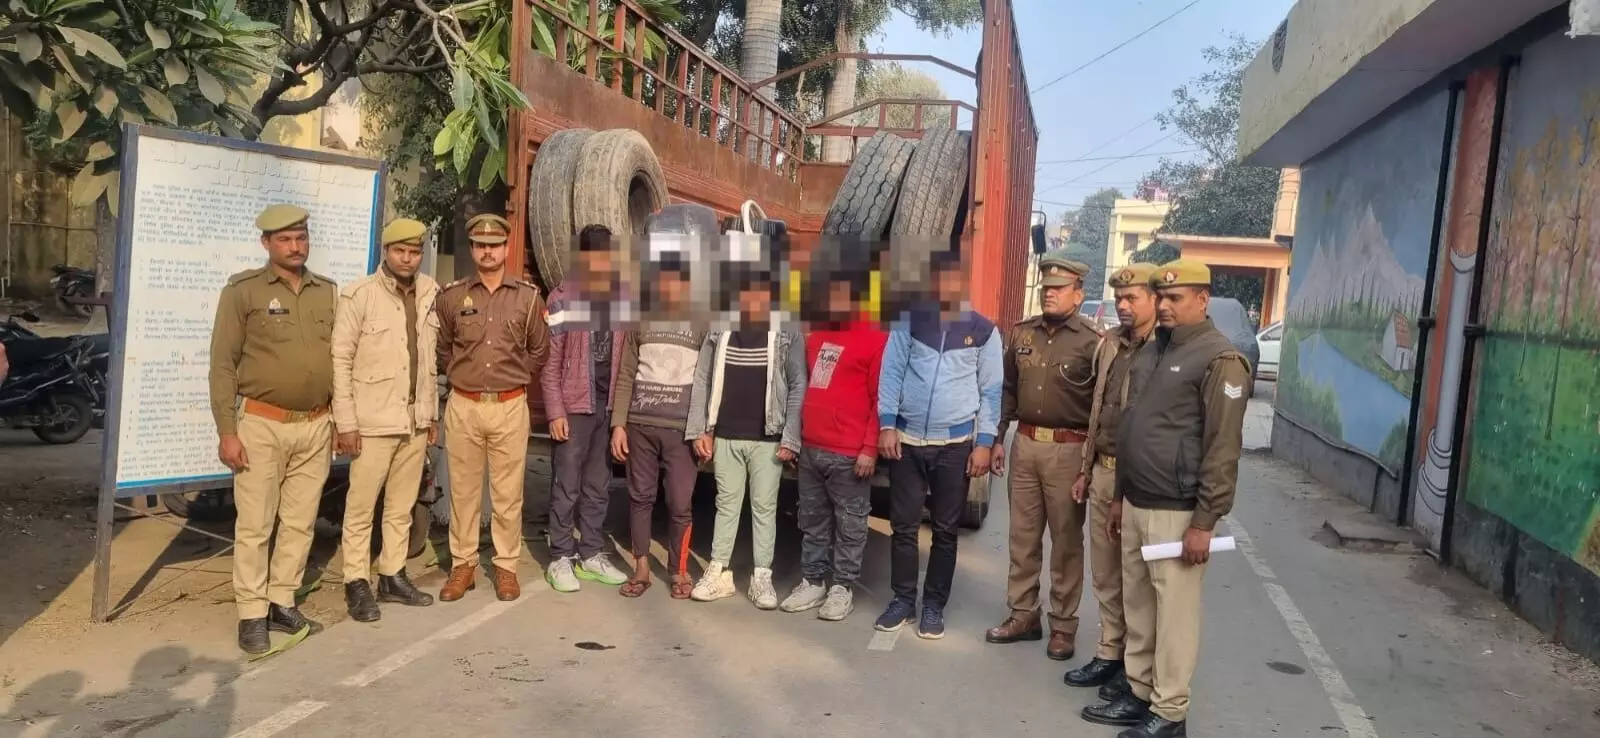 मुजफ्फरनगर पुलिस ने ट्रकों से डीजल व अन्य सामान चोरी करने वाले अन्तर्जनपदीय गिरोह का किया पर्दाफाश, 5 शातिर चोर गिरफ्तार